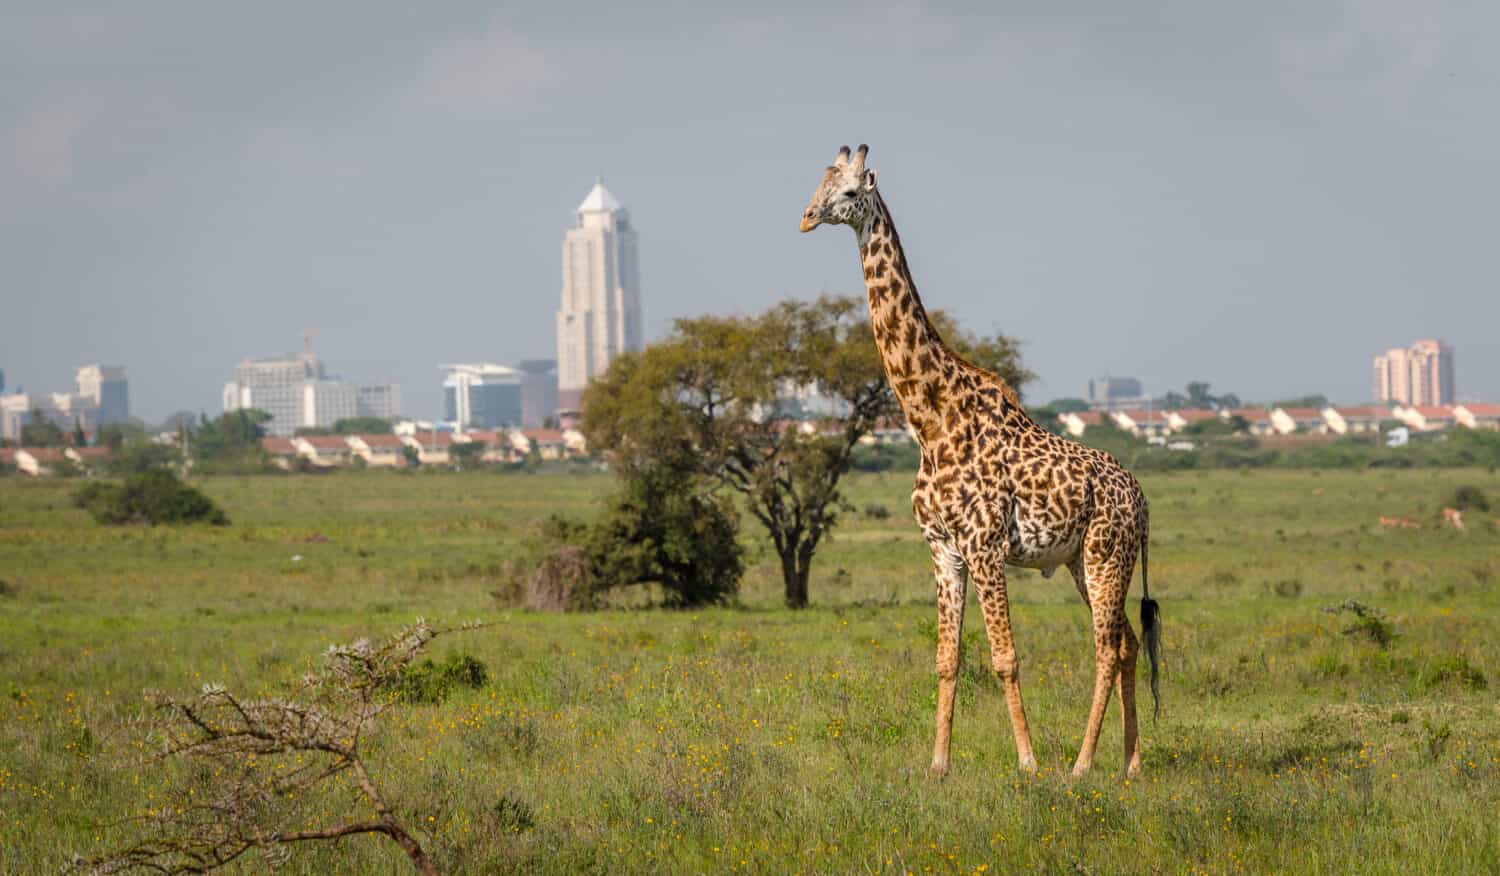 Giraffa nella città di Nairobi la capitale del Kenya.  Parco nazionale di Nairobi.  Architettura di Nairobi sullo sfondo della bellissima giraffa.